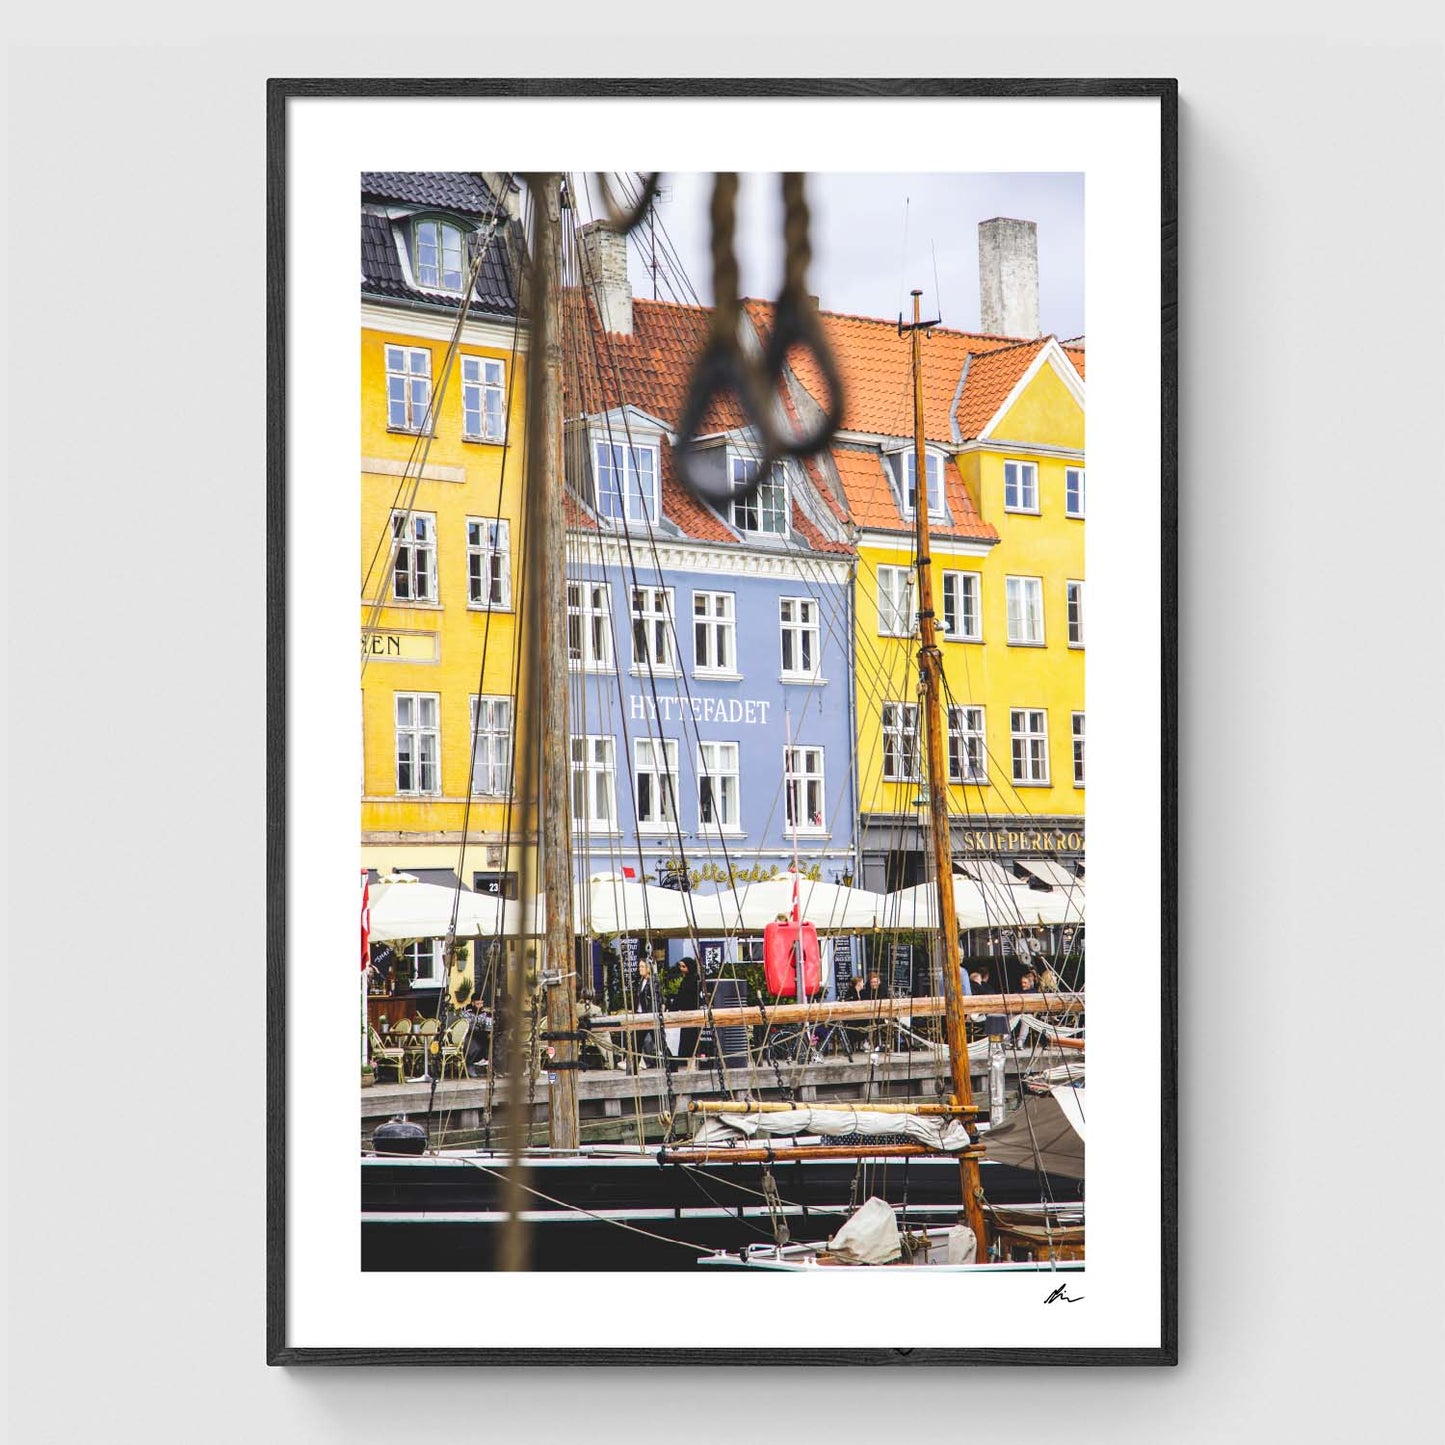 Hyttefadet i Nyhavn